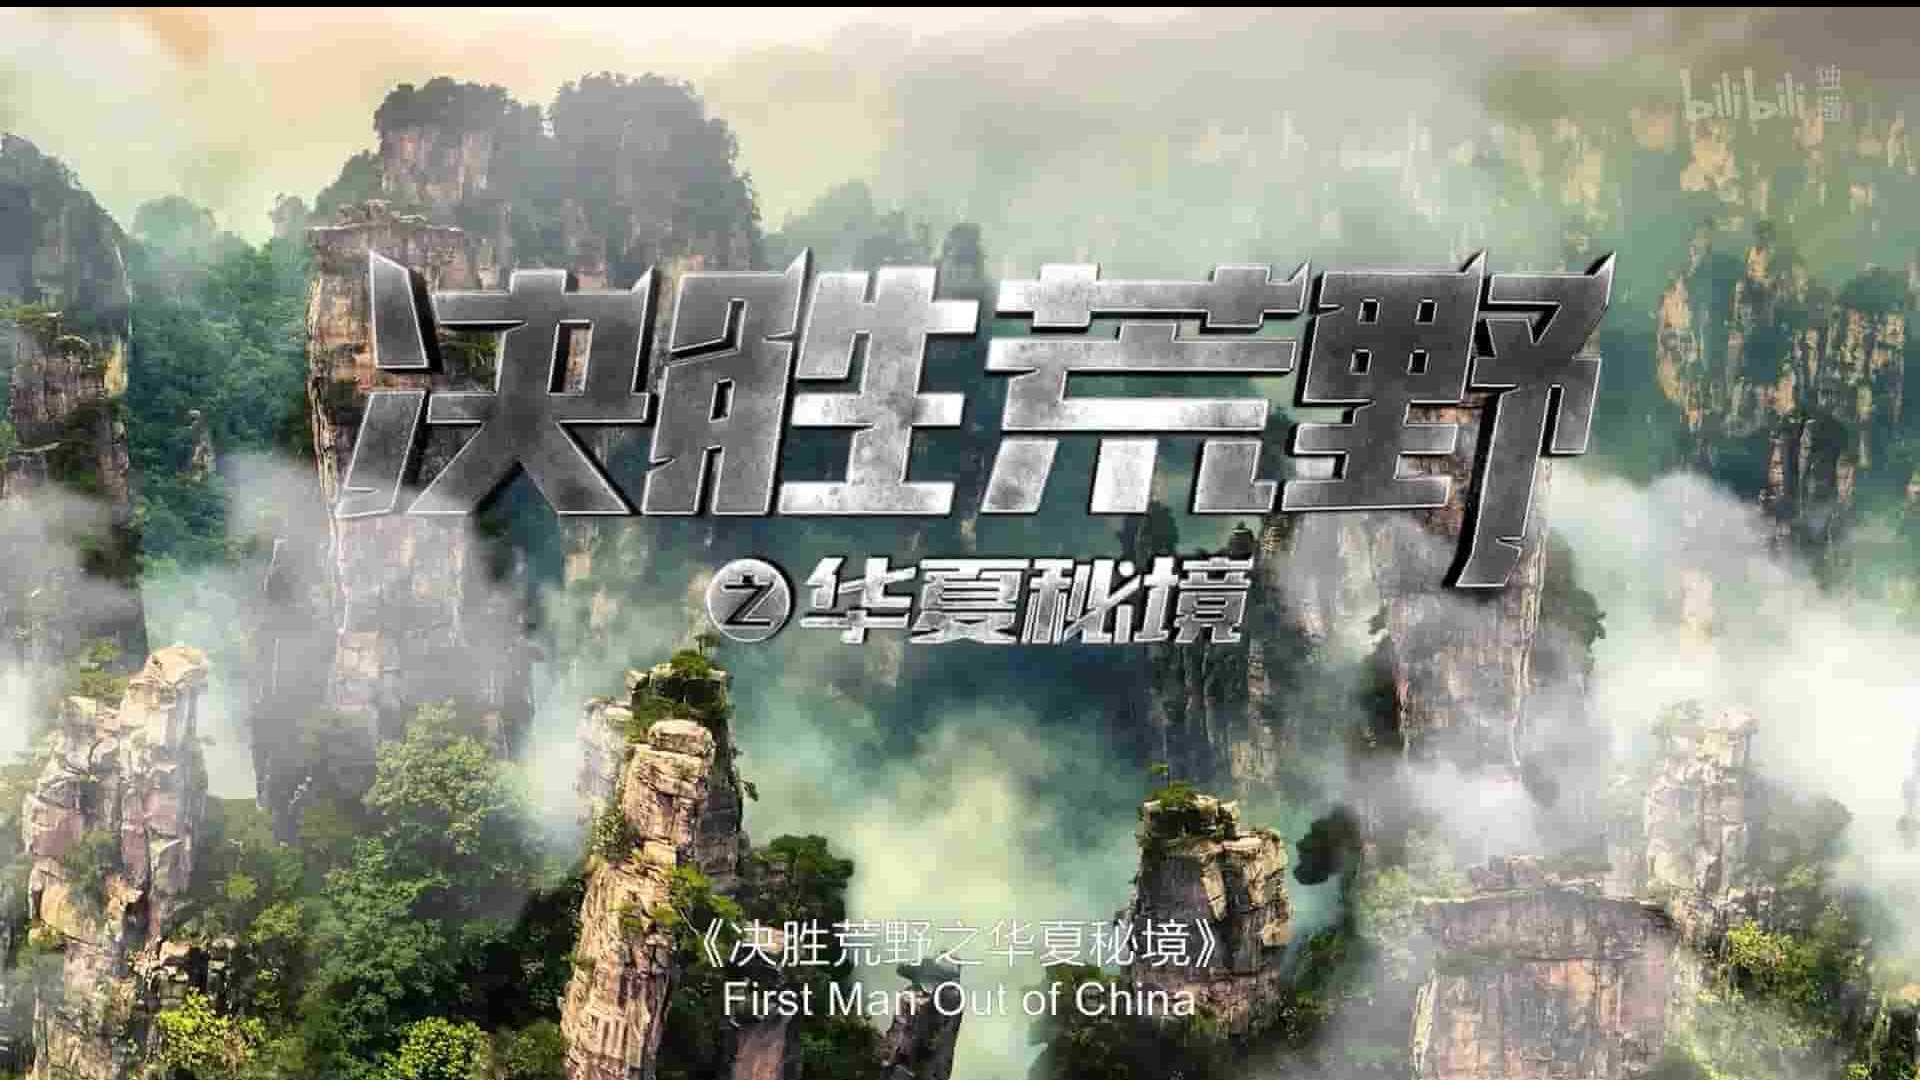 探索频道《决胜荒野之华夏秘境 First Man Out of China 2020》全6集 英语中字 1080P高清网盘下载 